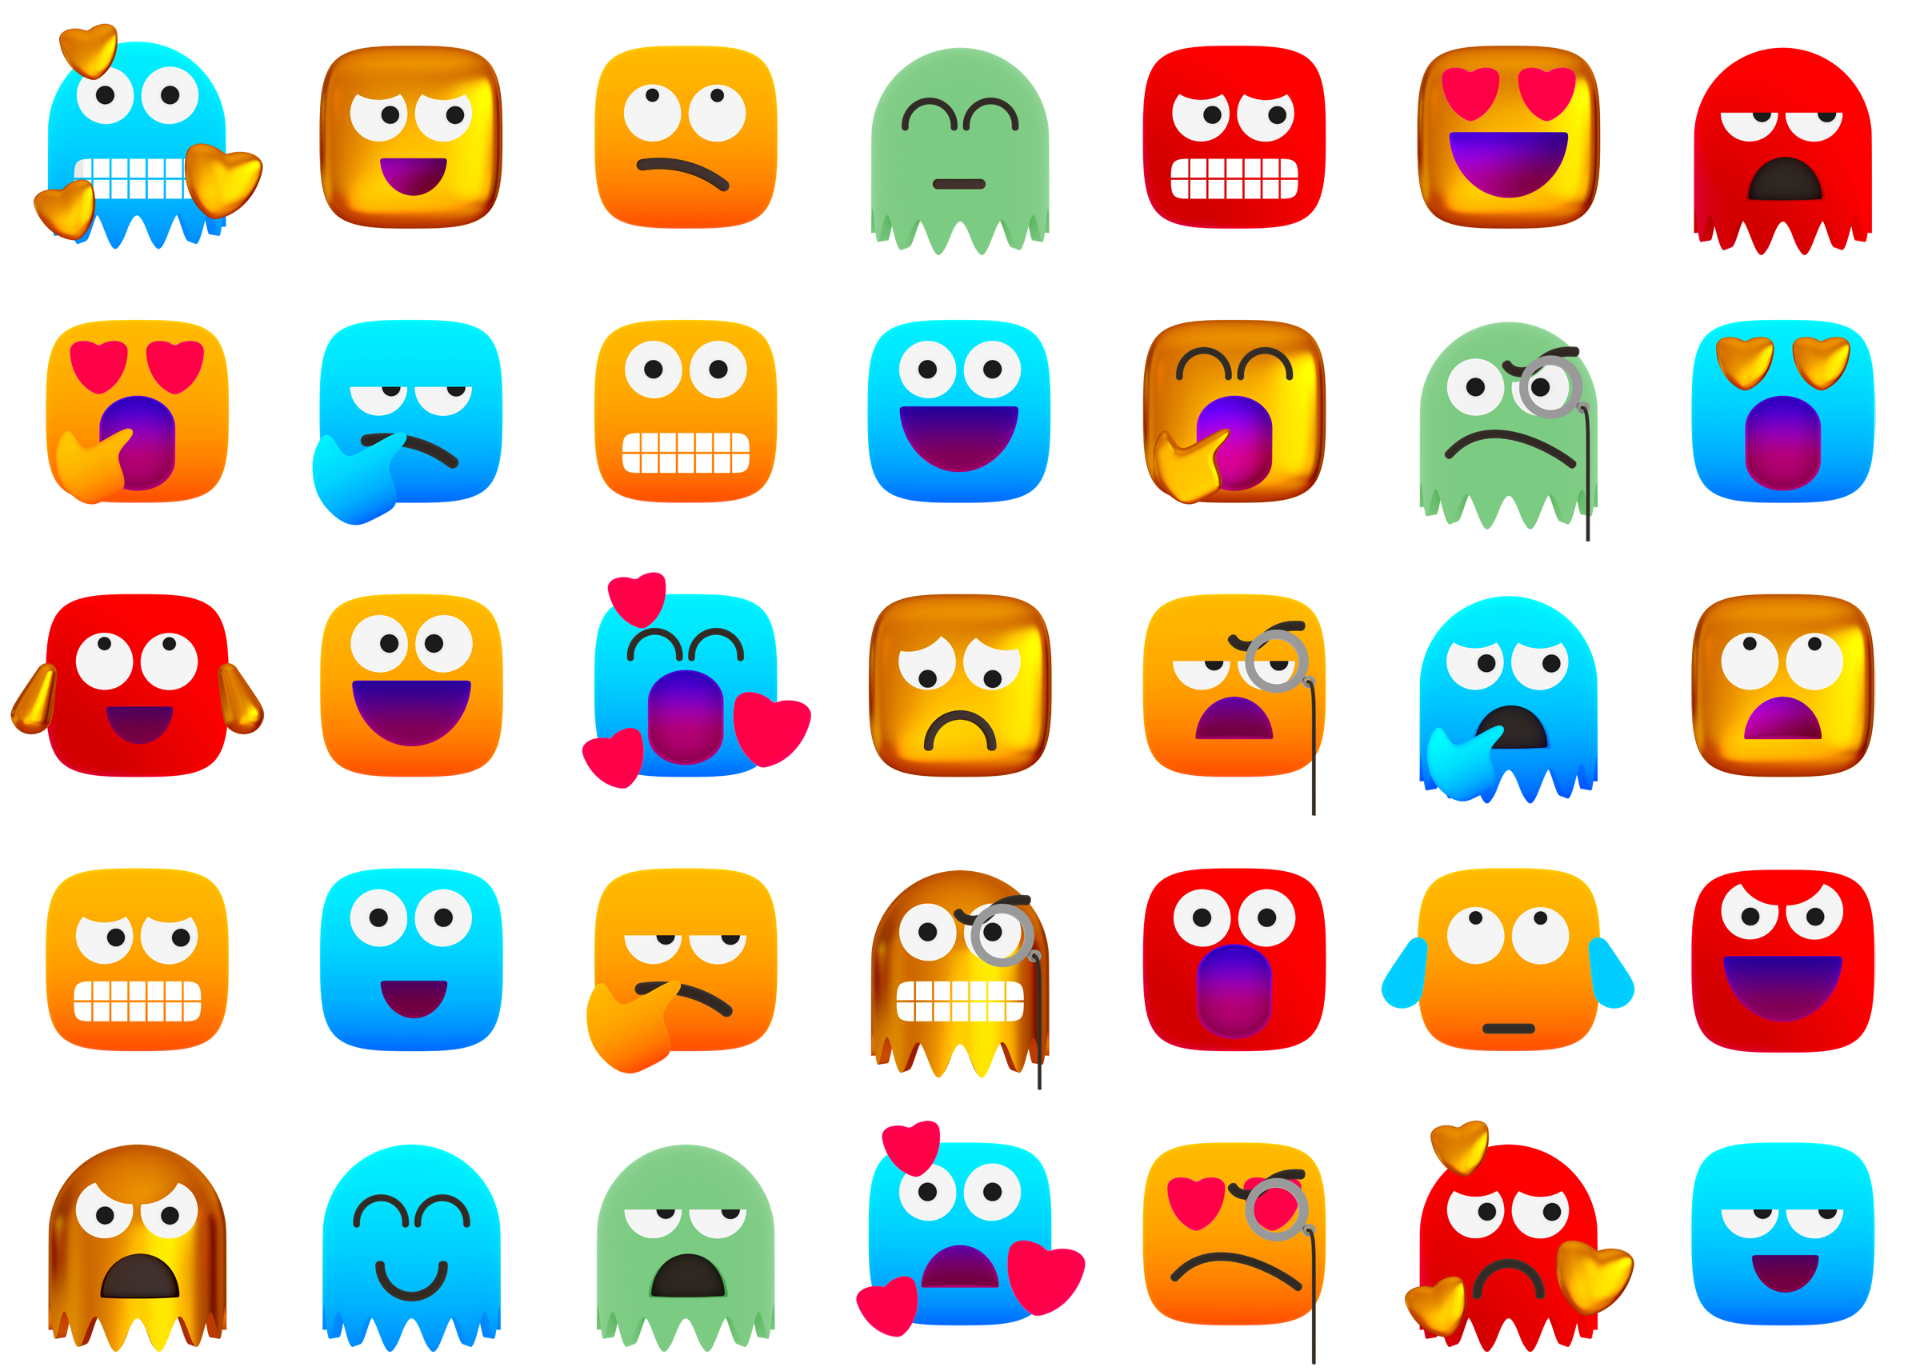 Lots of 3D rendered emojis